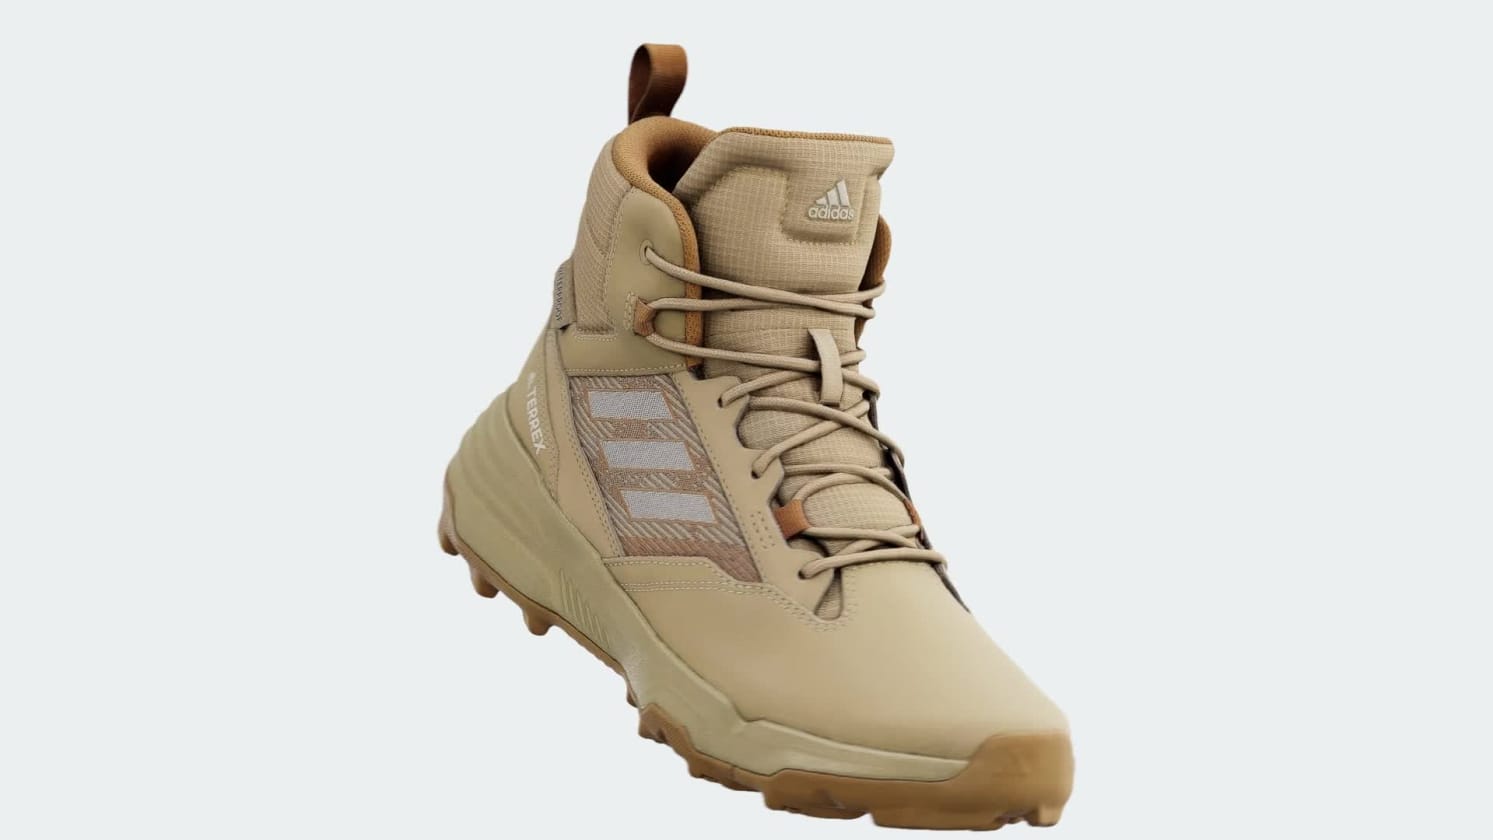 adidas Unity Leather Mid RAIN.RDY Hiking Shoes - Beige | Unisex Hiking | adidas US